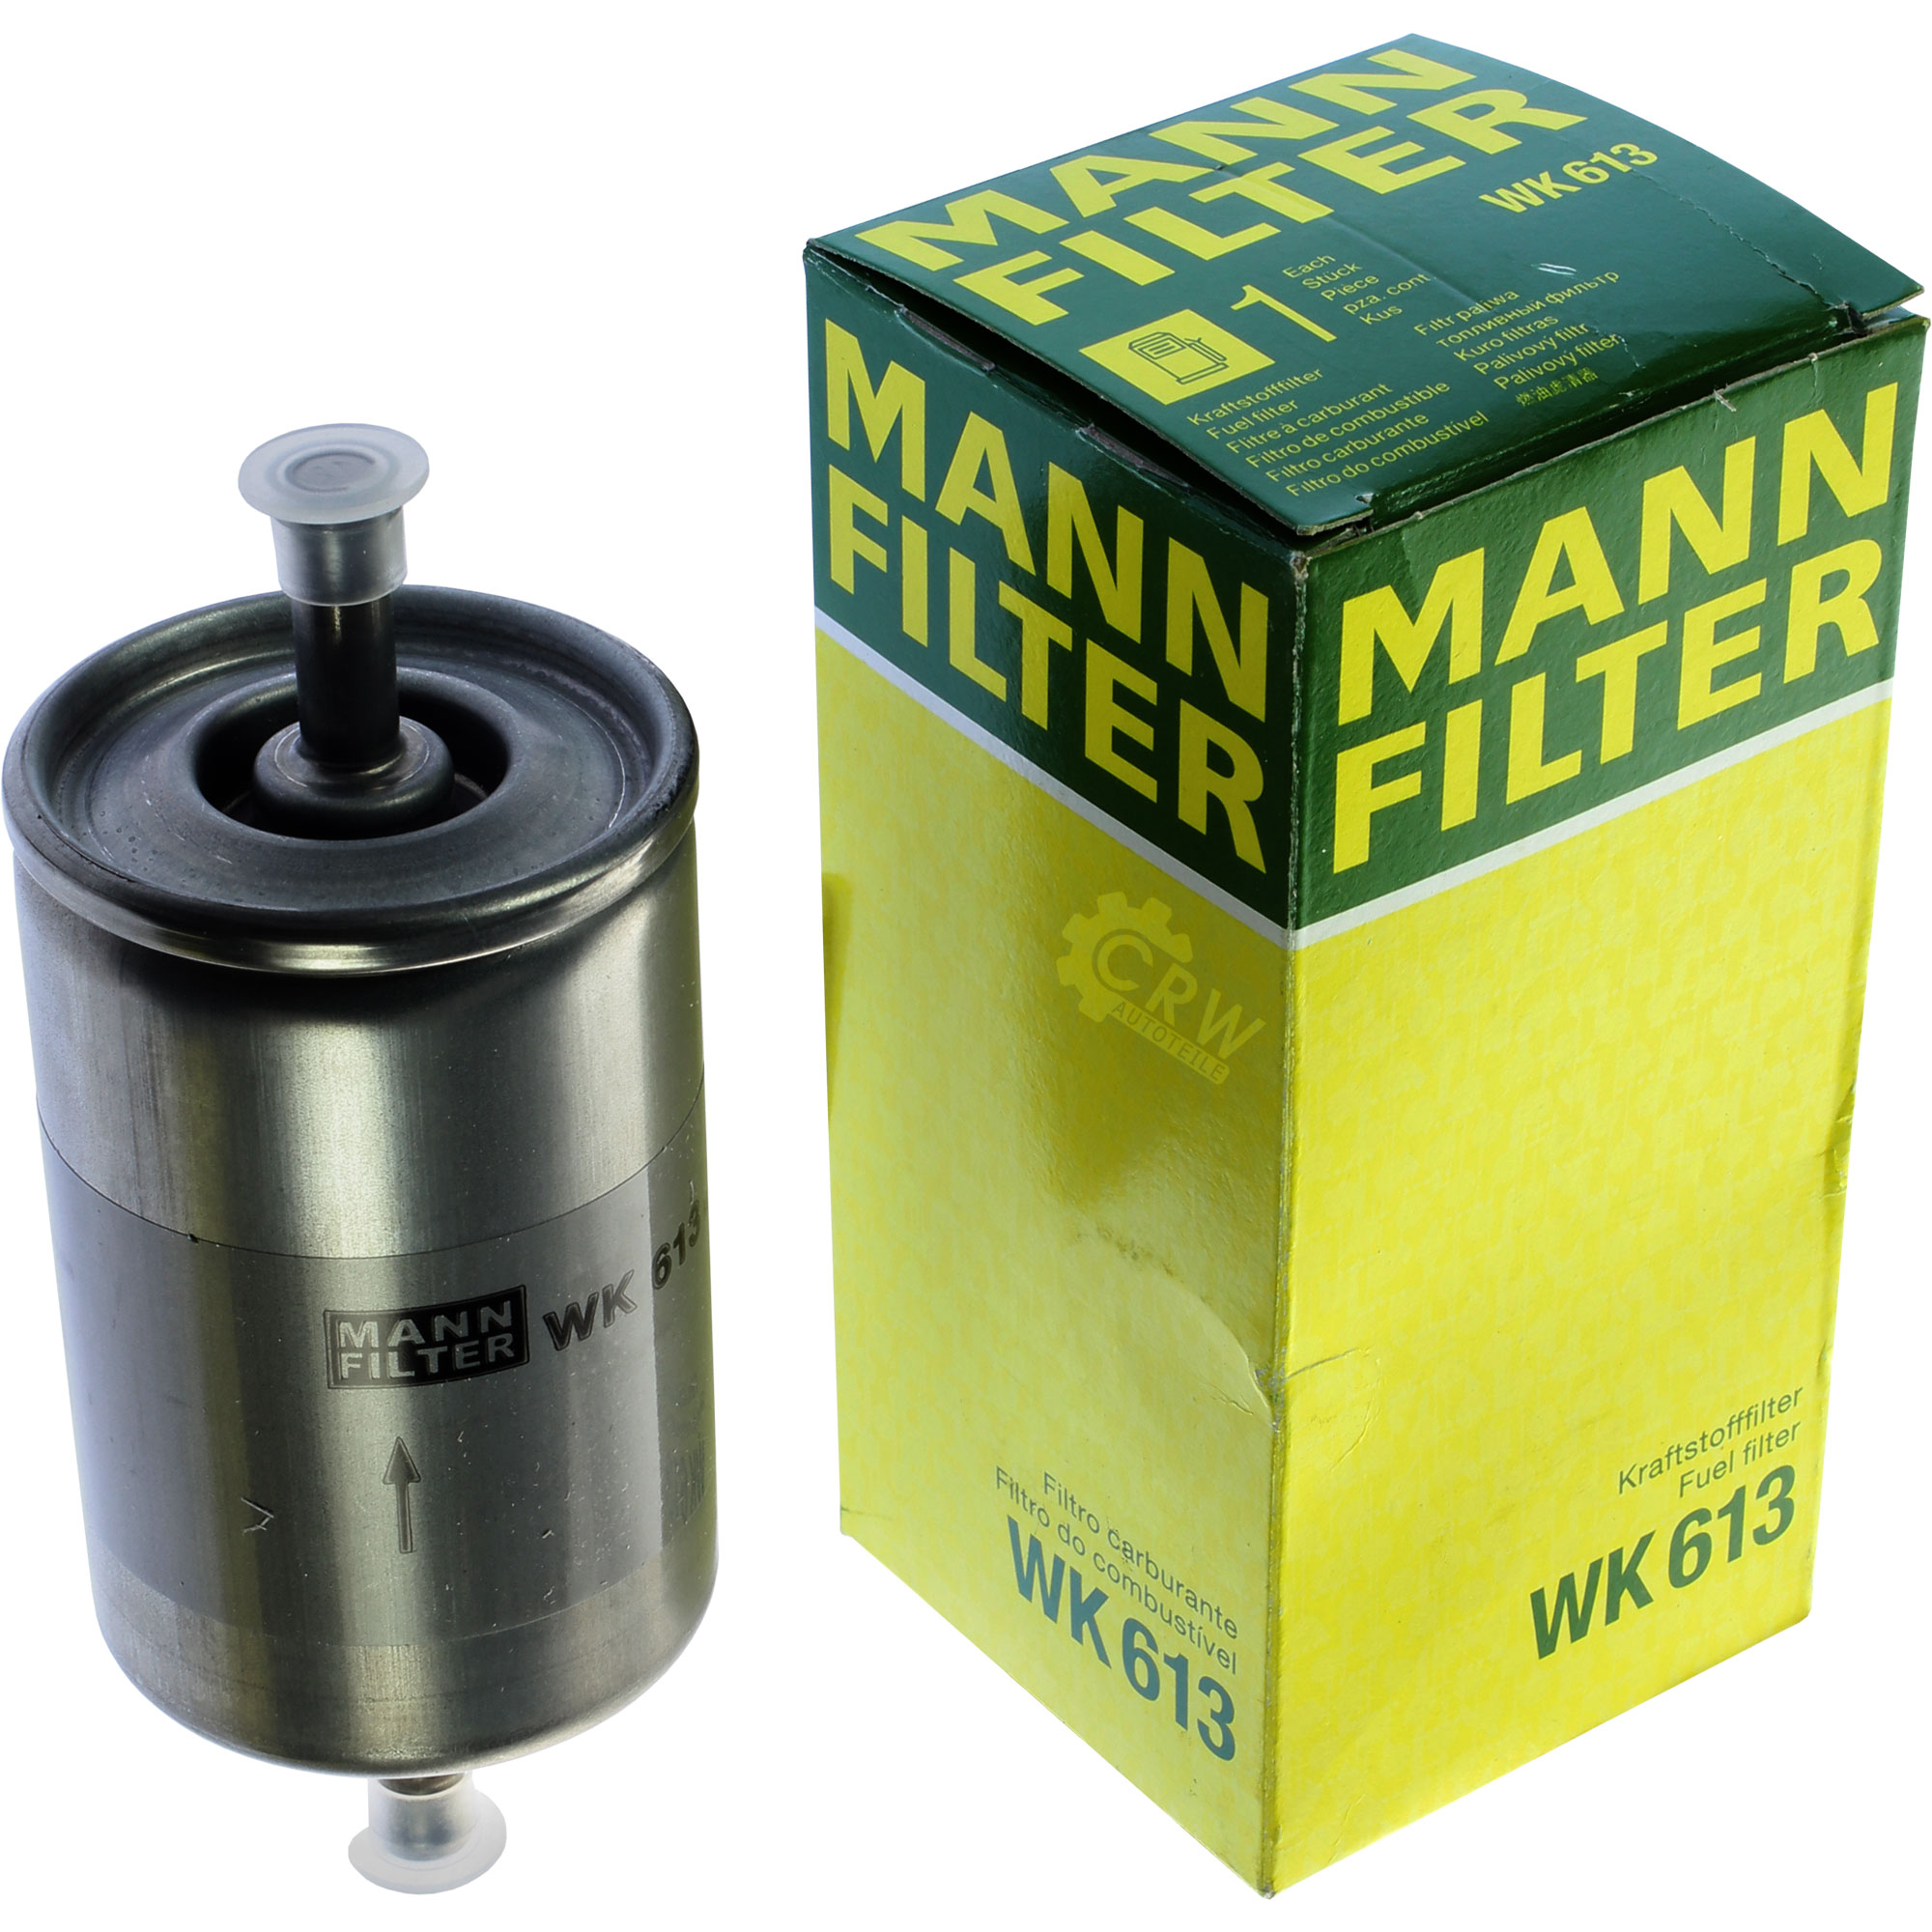 MANN-FILTER Kraftstofffilter WK 613 Fuel Filter